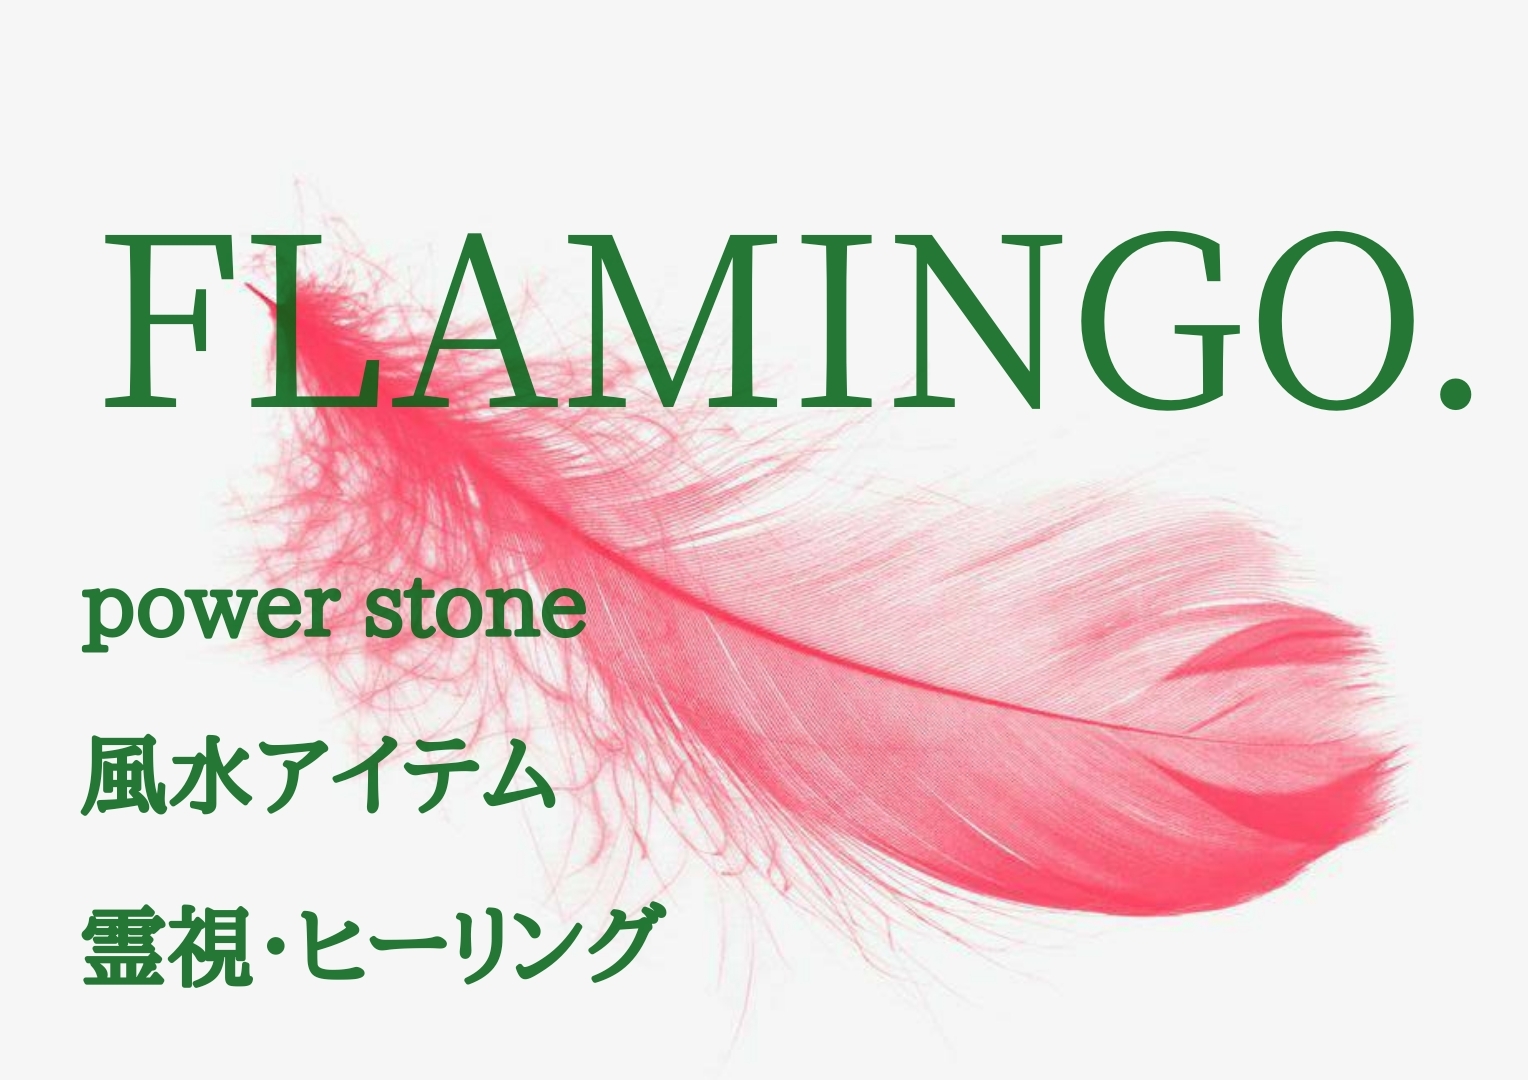 power stone☆霊視☆風水☆ヒーリング FLAMINGO. 月の環.